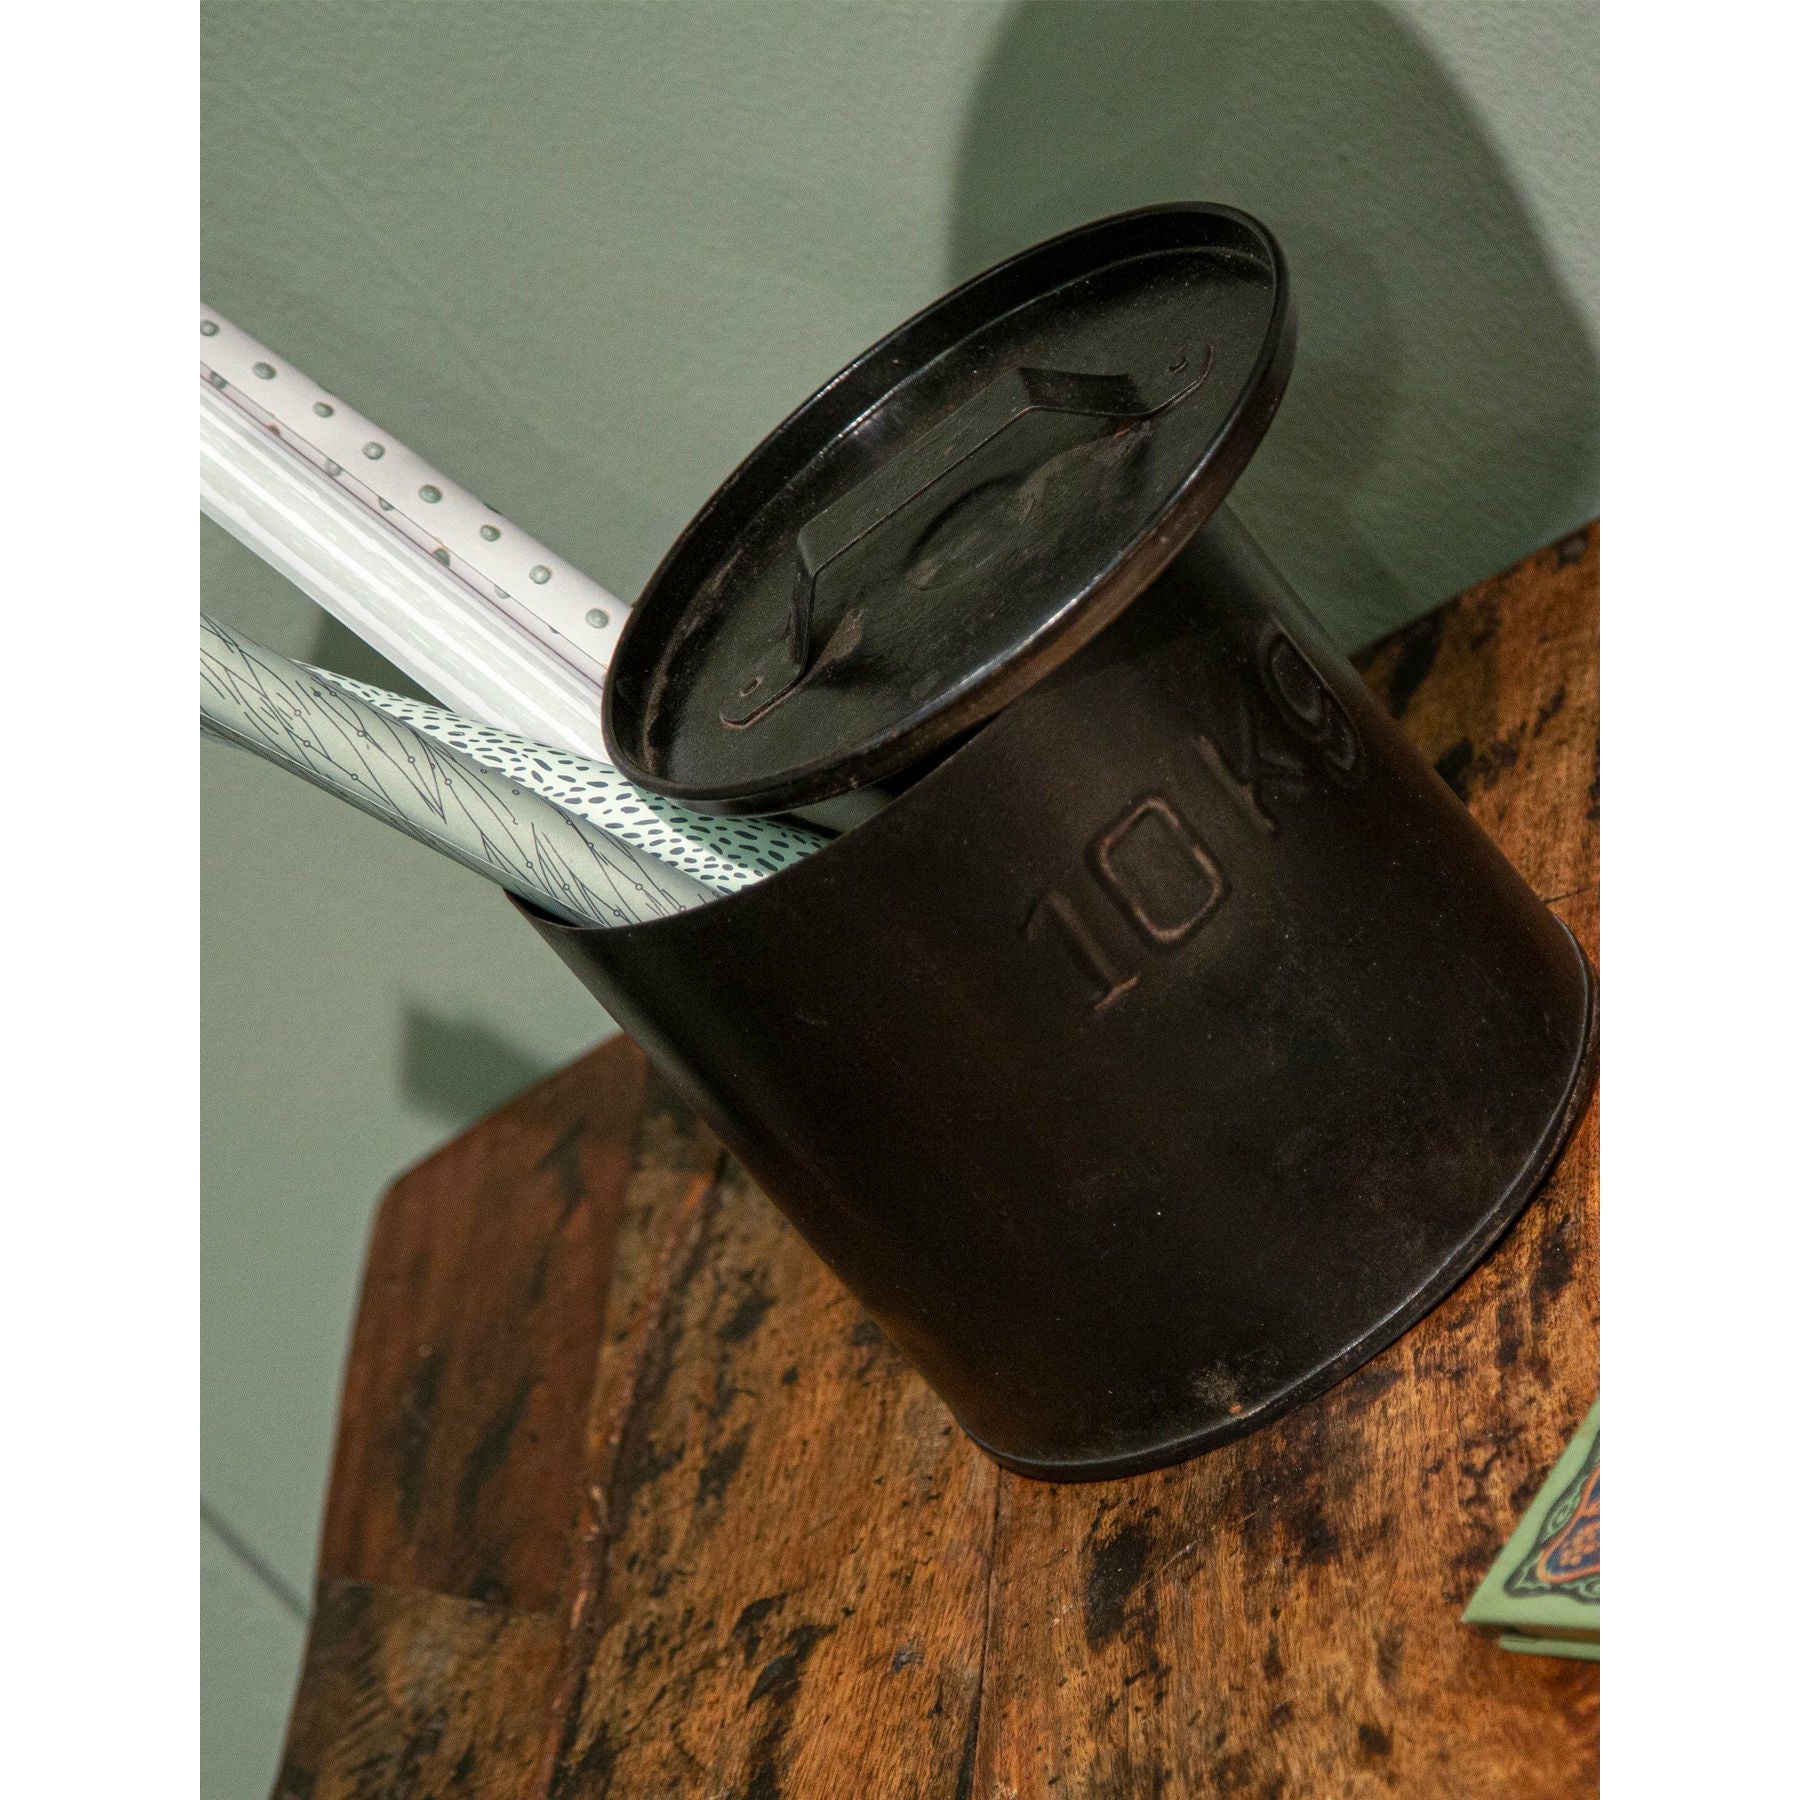 SJÆLSØ Nordic jernbøtte med lokk 10 kg, svart - sett med 2